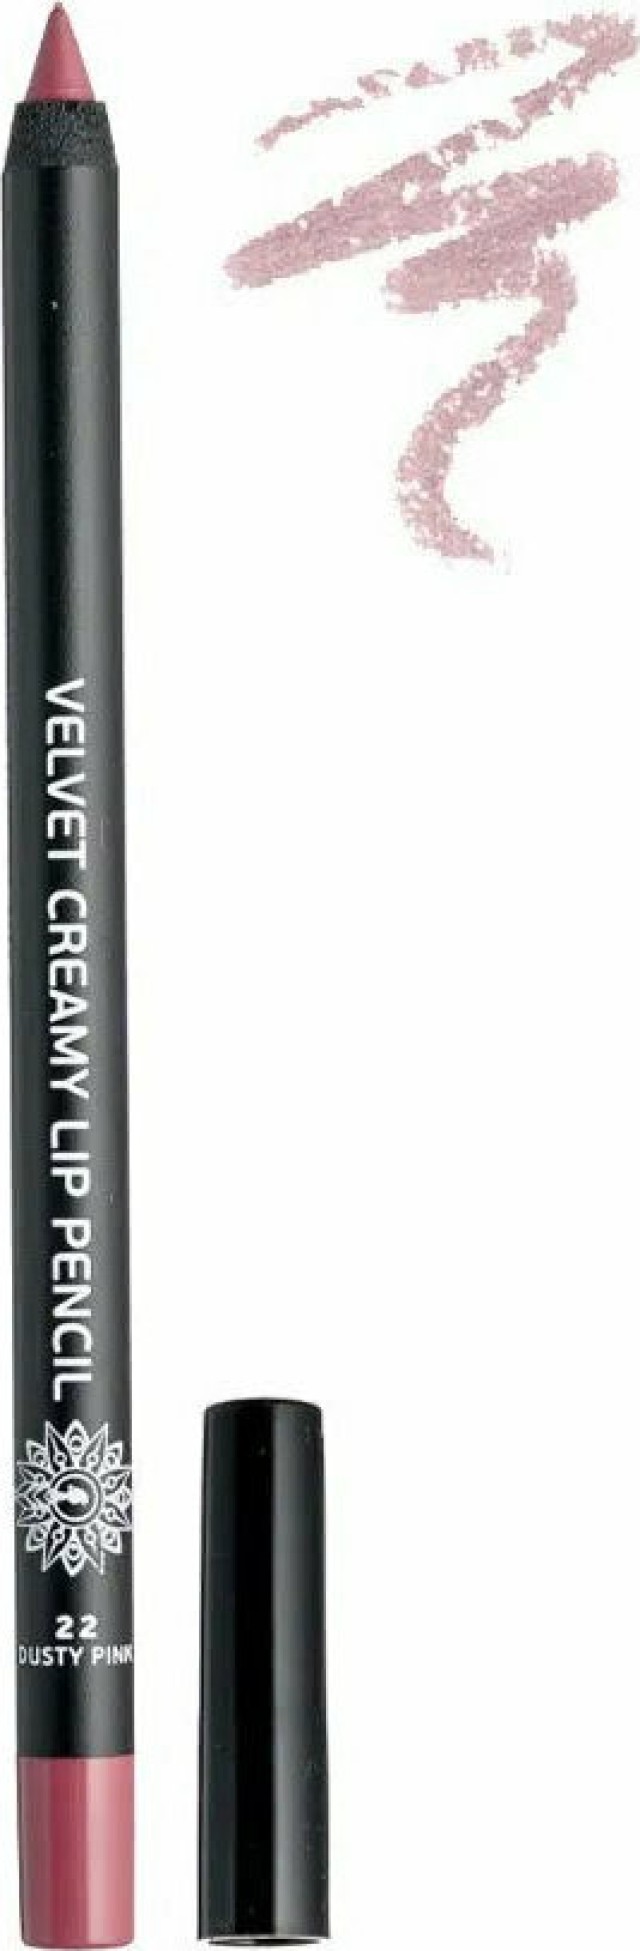 GARDEN Velvet Creamy Lip Pencil Μολύβι Χειλιών Για Τέλειο Περίγραμμα Dusty Pink No22, 1.4g